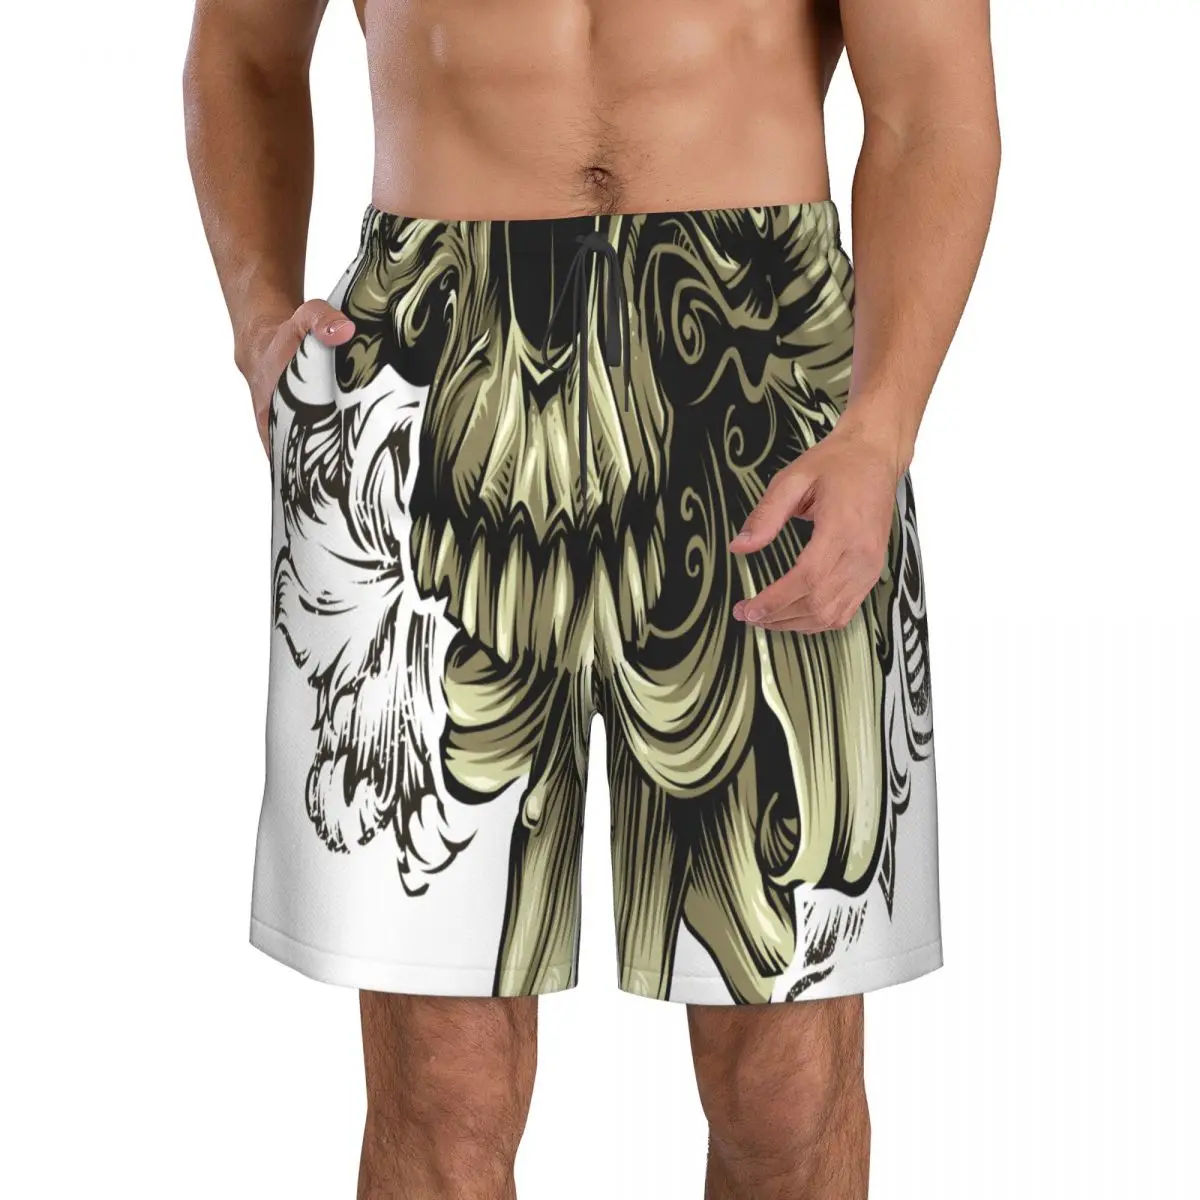 Мужская быстросохнущая пляжная одежда, купальник с цветочным принтом в виде черепа, Мужской купальный костюм 2022, летняя мужская одежда для купания